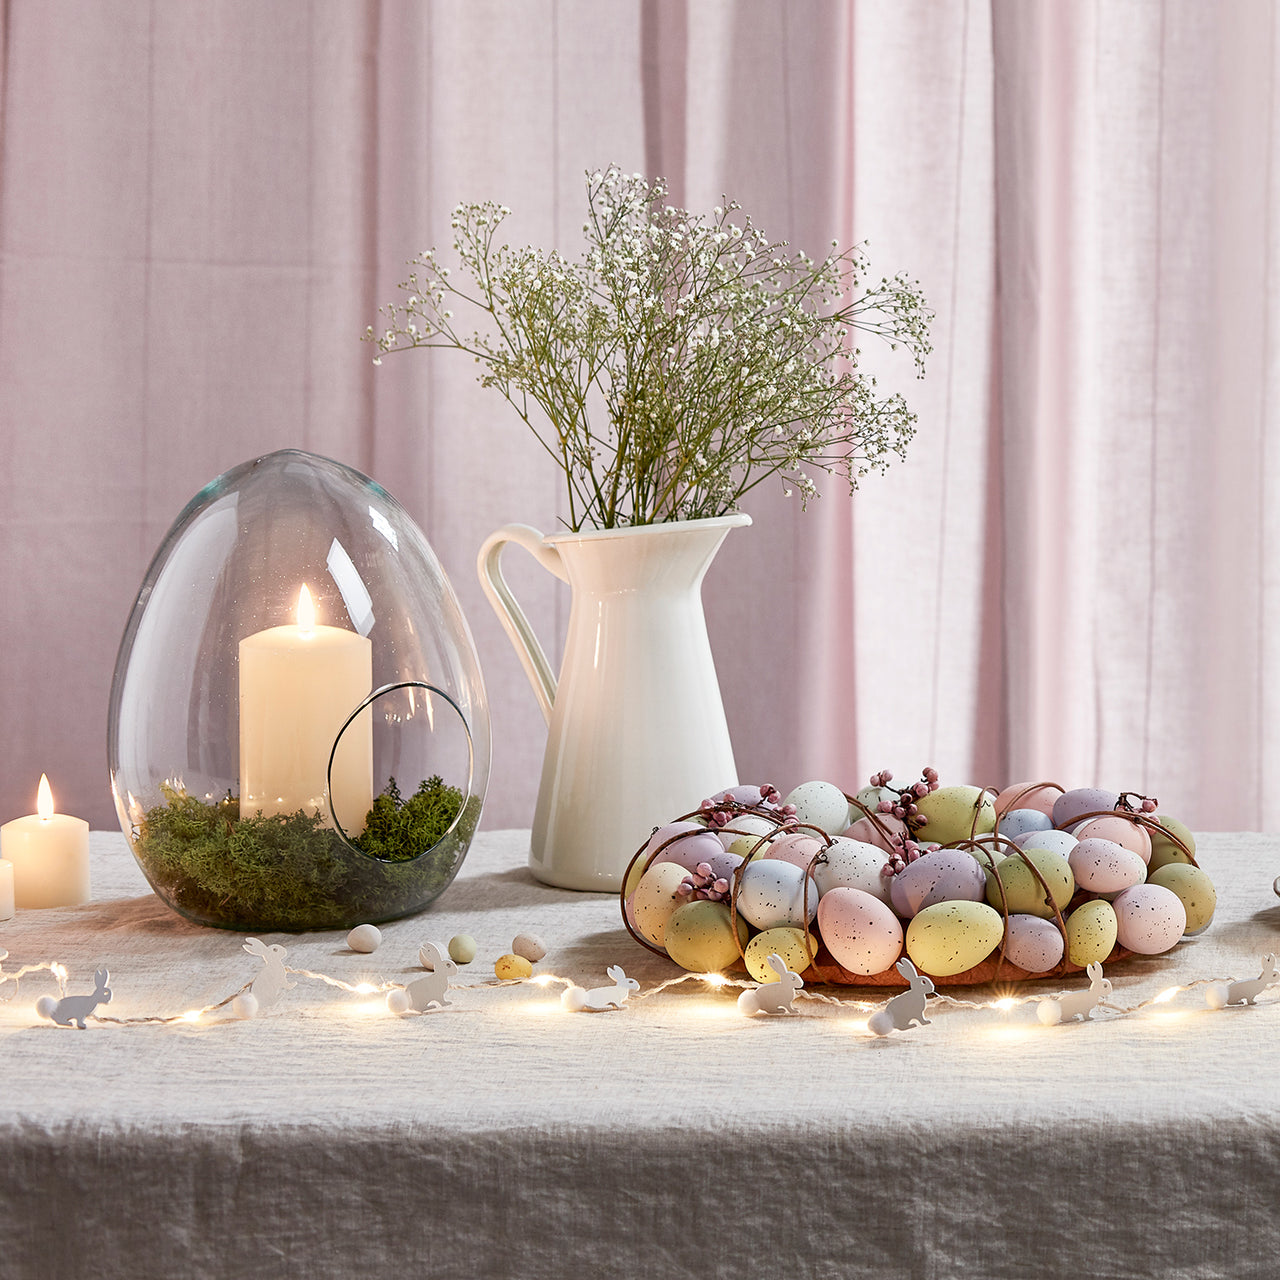 Osterliche Tischdeko mit Kranz und Osterei Vase vor rosafarbenem Vorhang.